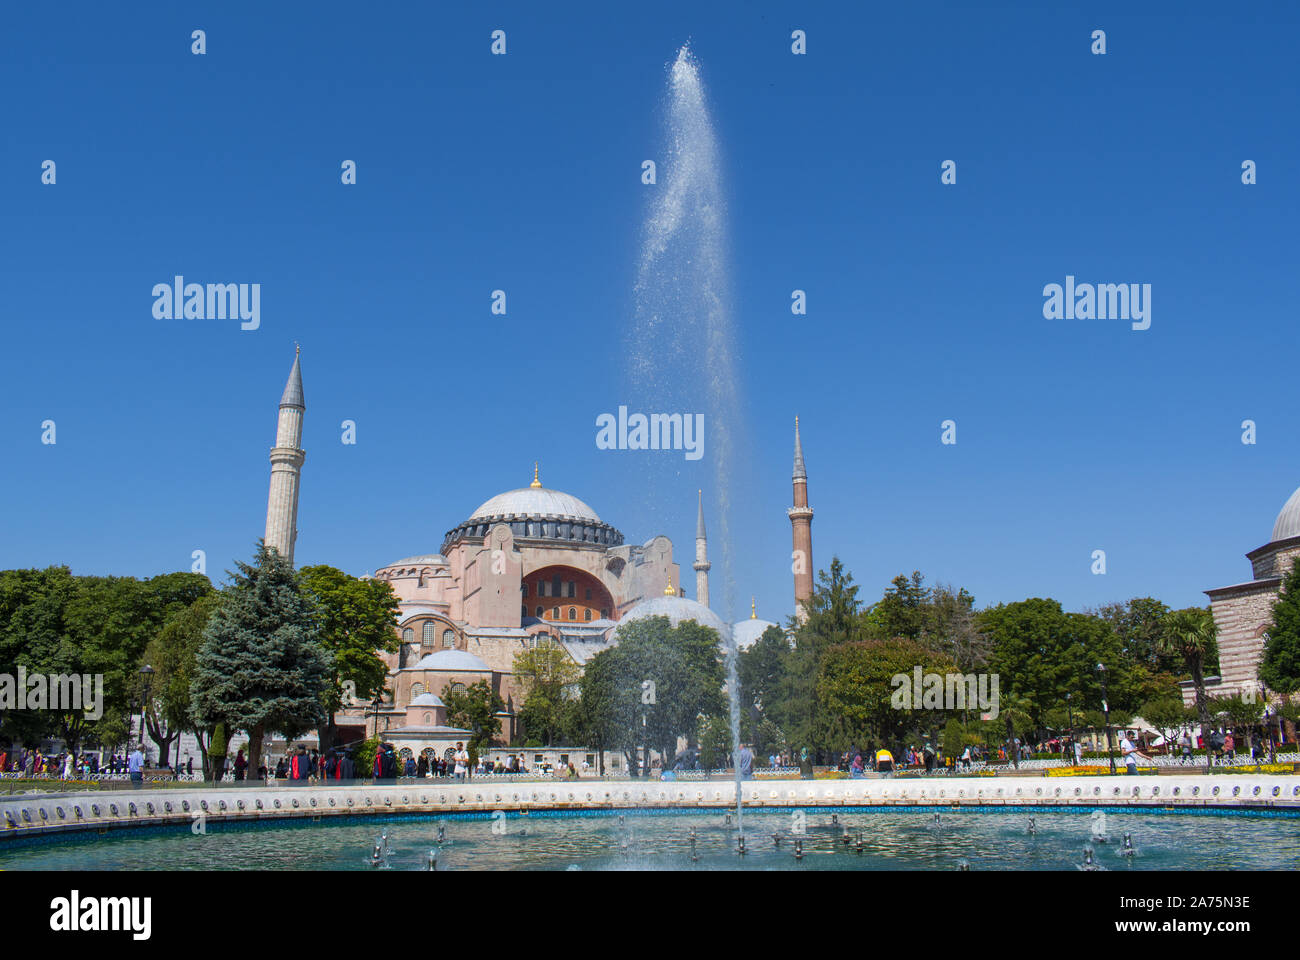 Istanbul : Hagia Sophia, ex-Chrétienne Grecque Orthodoxe cathédrale patriarcale puis mosquée impériale ottomane maintenant musée, du Parc de la fontaine du Sultan Ahmet Banque D'Images